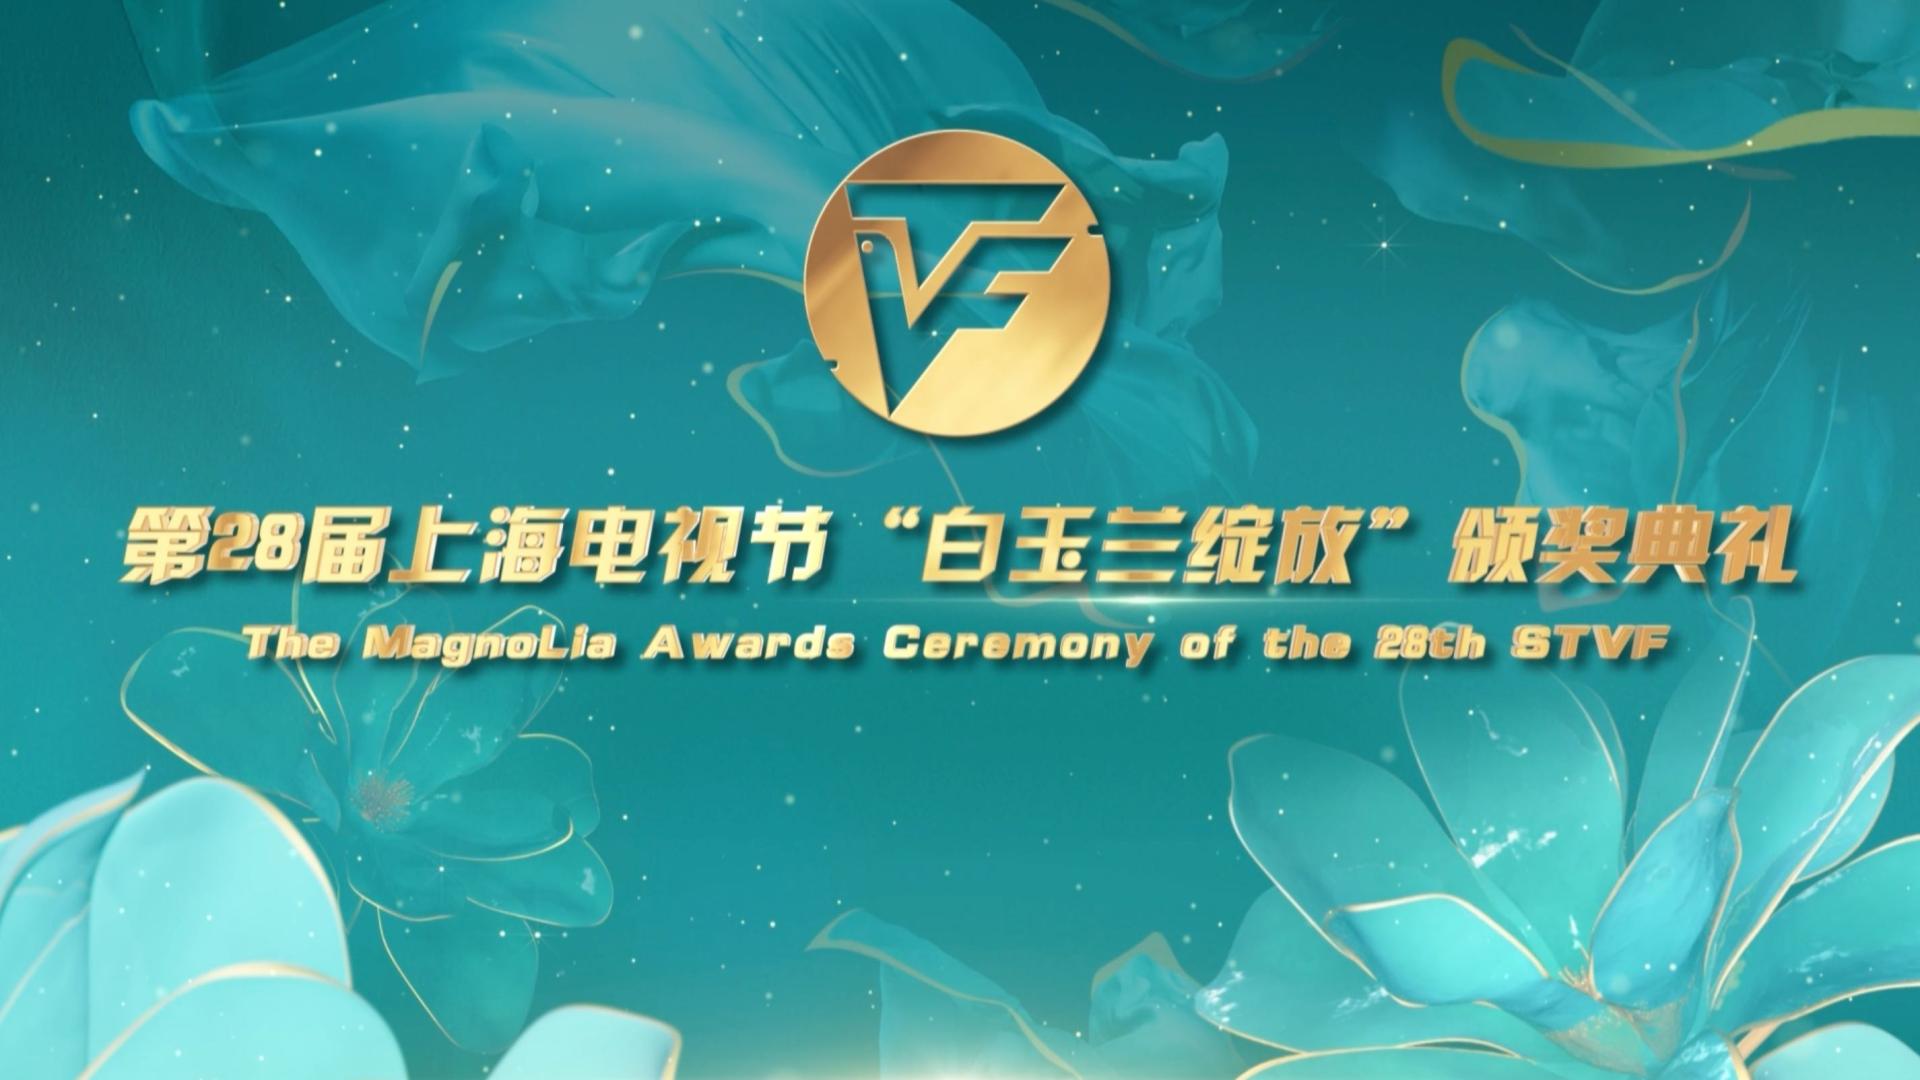 第28节上海电视节“白玉兰绽放”颁奖典礼开场曲《我们的白玉兰》